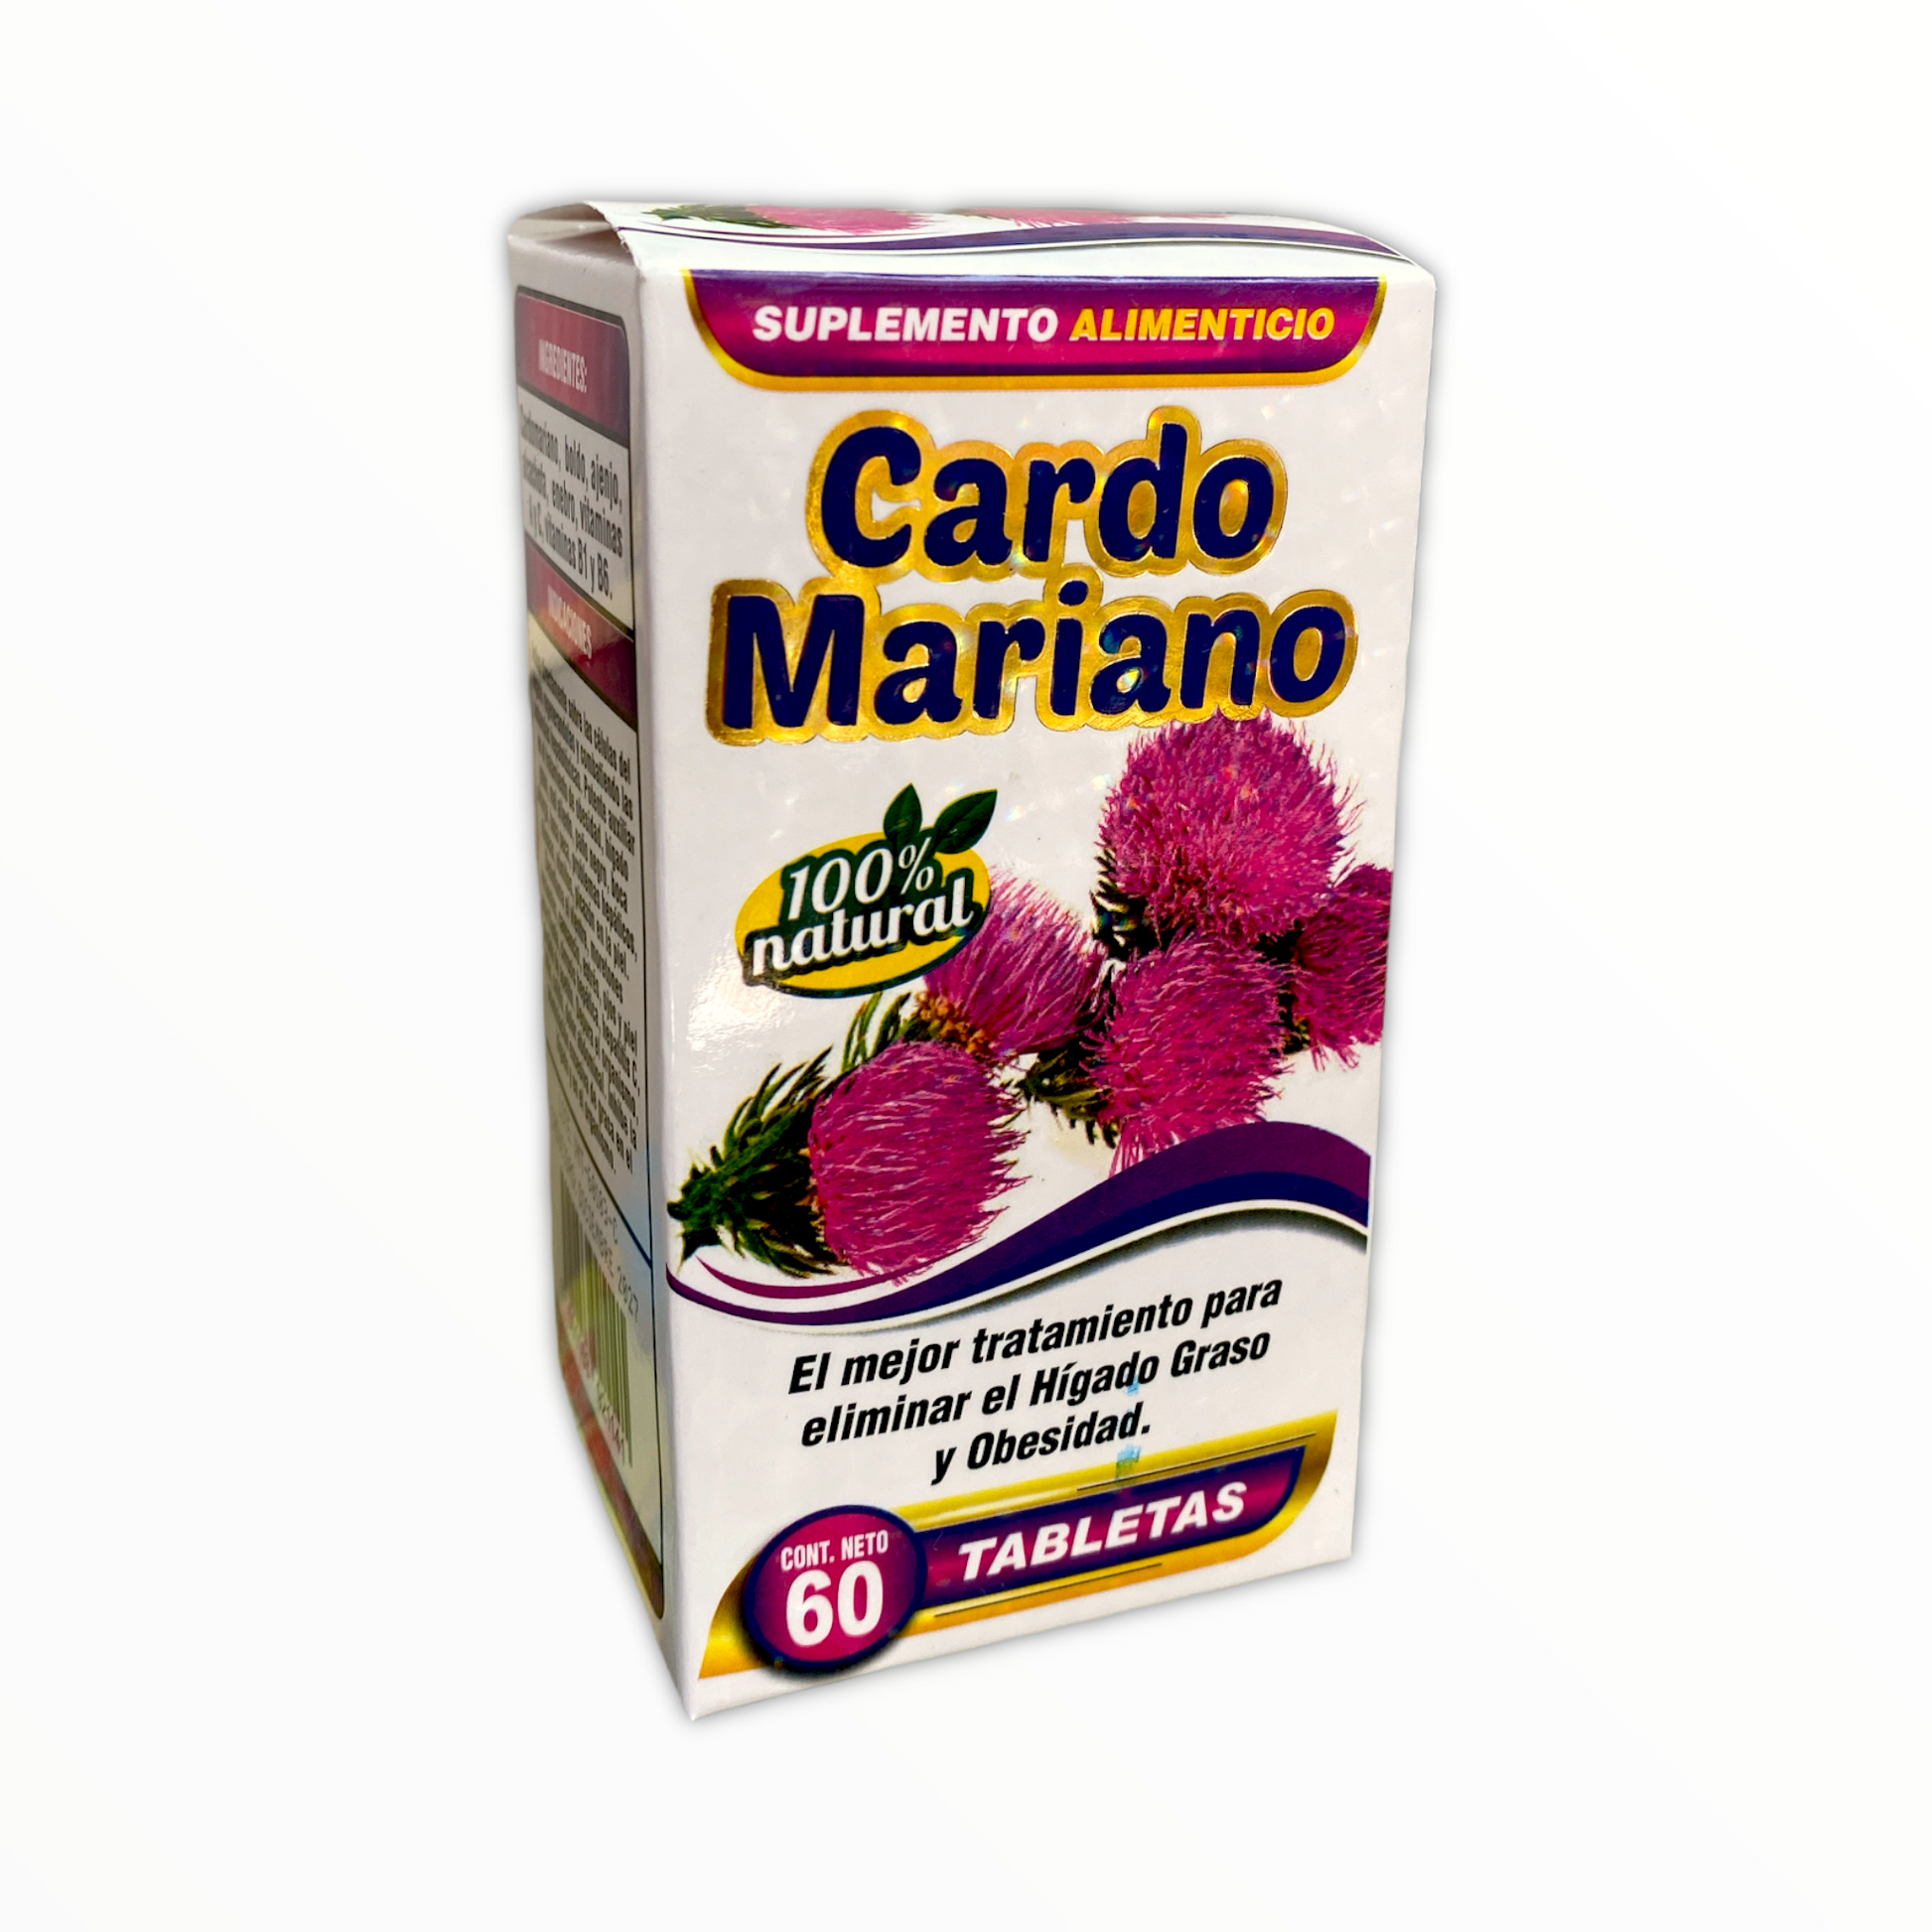 cardo mariano 100% natural 60 tabletas the king